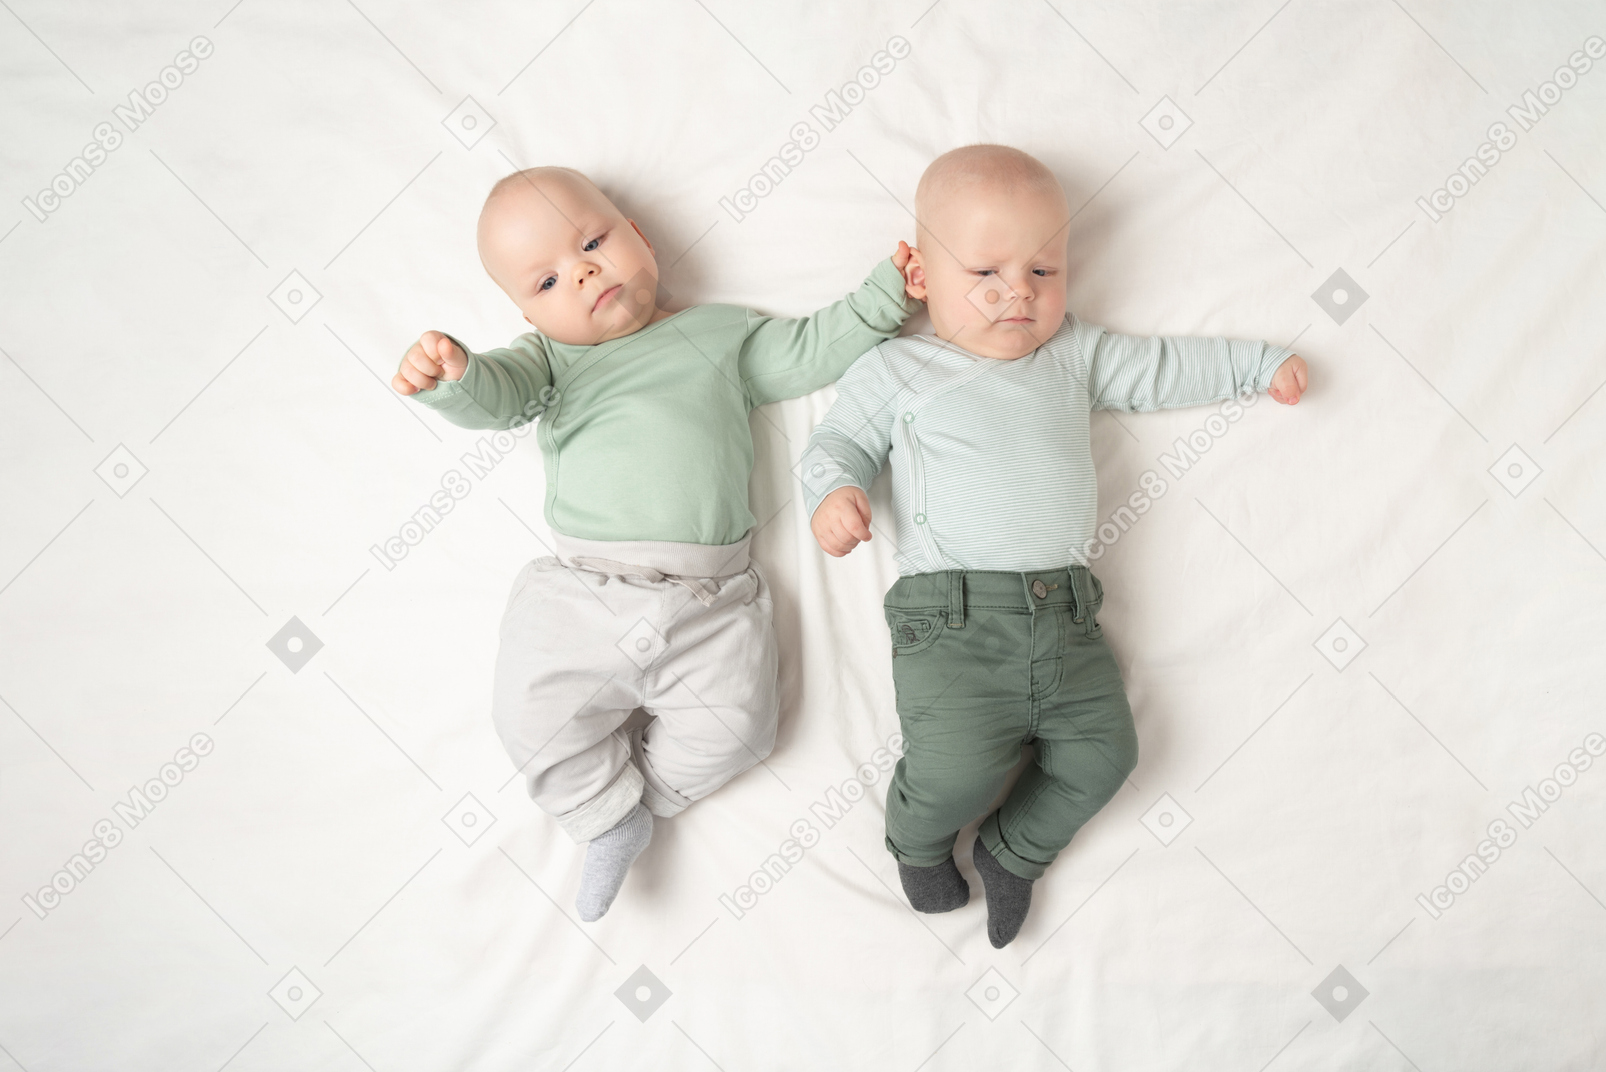 Babys zwillinge nebeneinander auf dem rücken liegen